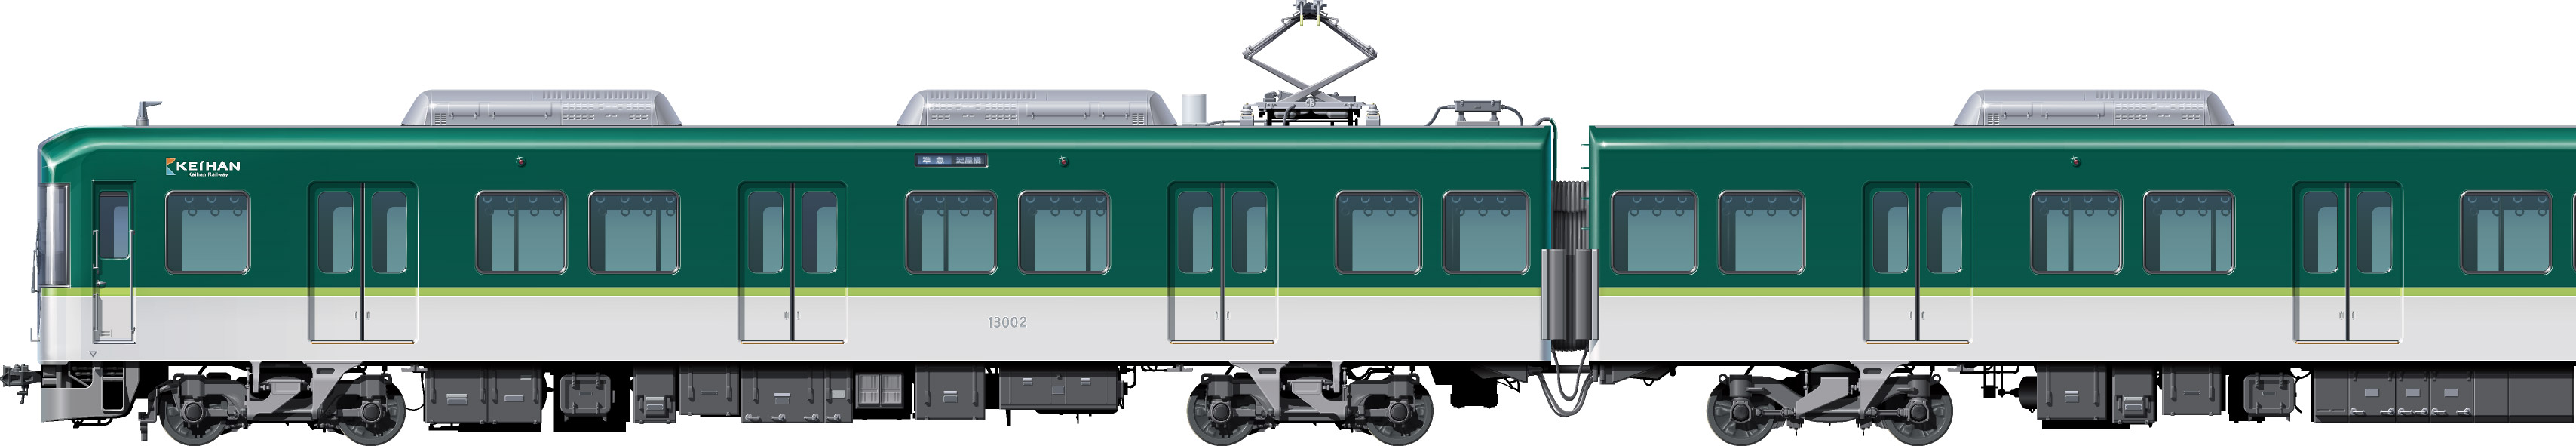 13000 系 京阪 京阪13000系電車